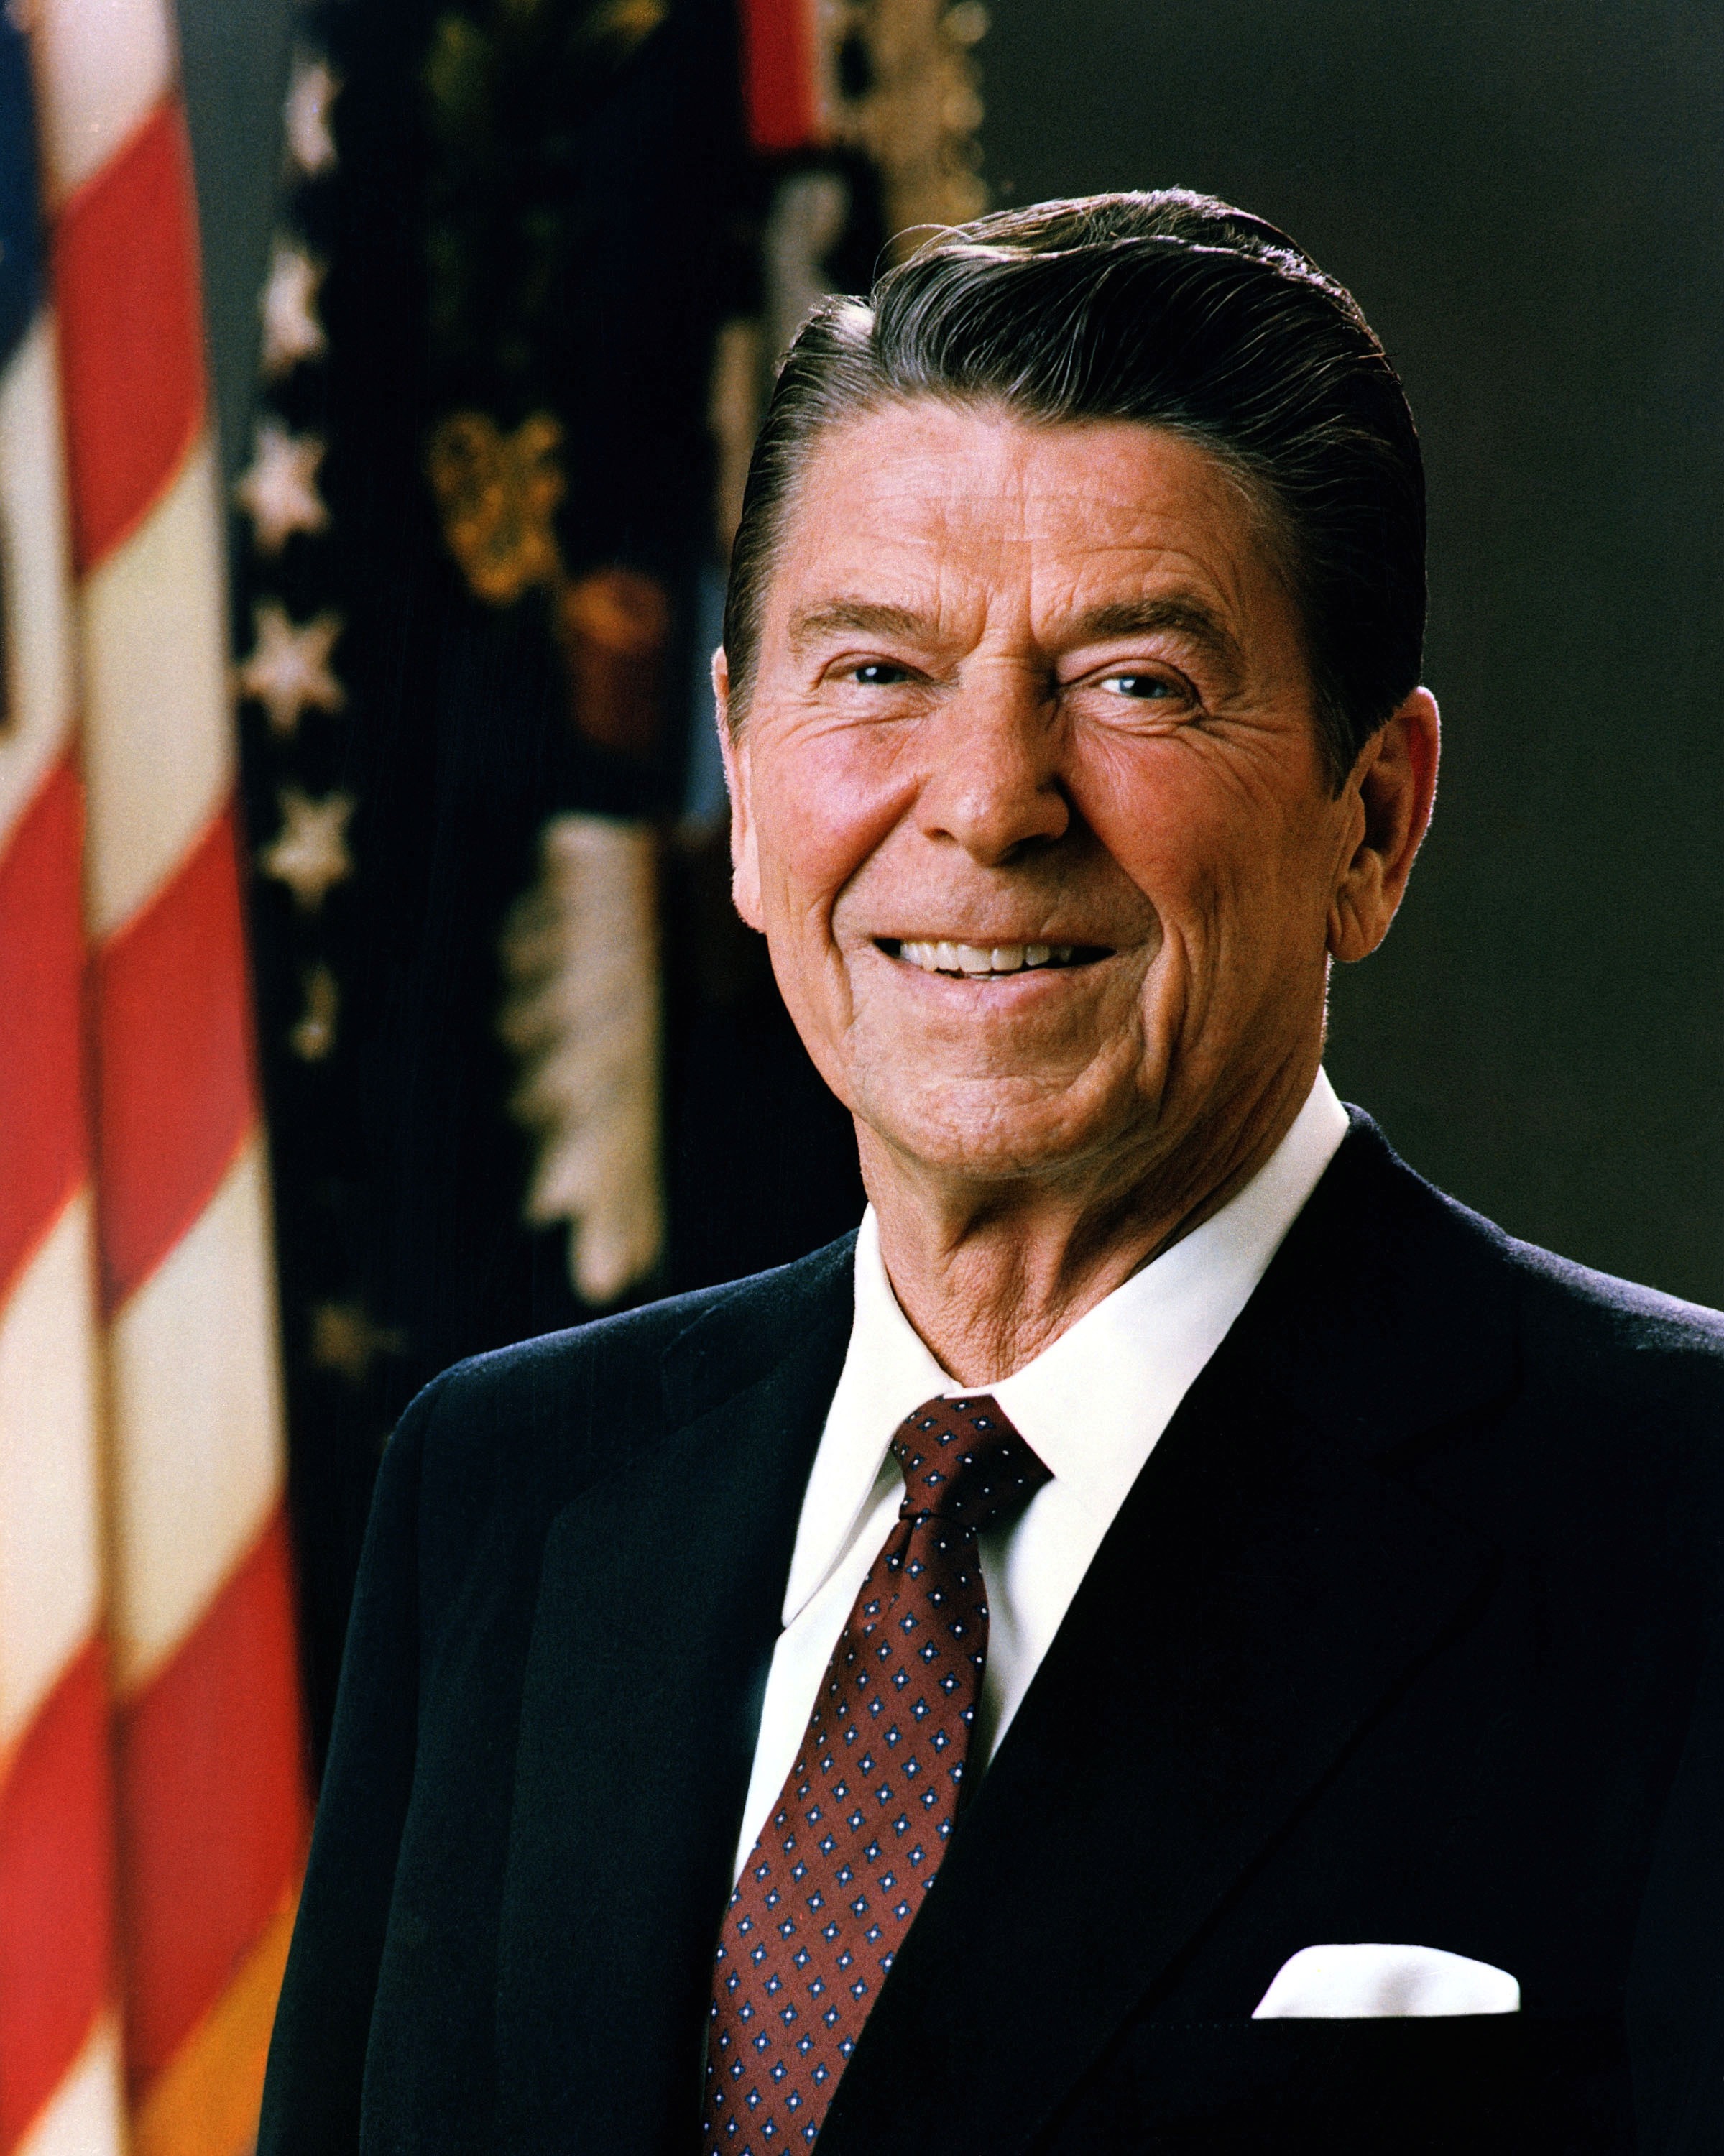 Prezydent Ronald Reagan - 40sty Prezydent USA. Bezprzeprosinowy wojownik Zimnej Wojny przeciwko ZSRR. Jego administracja doprowadziła do rozpadku ZSRR i bloku wschodniego, wspierał Solidarność.